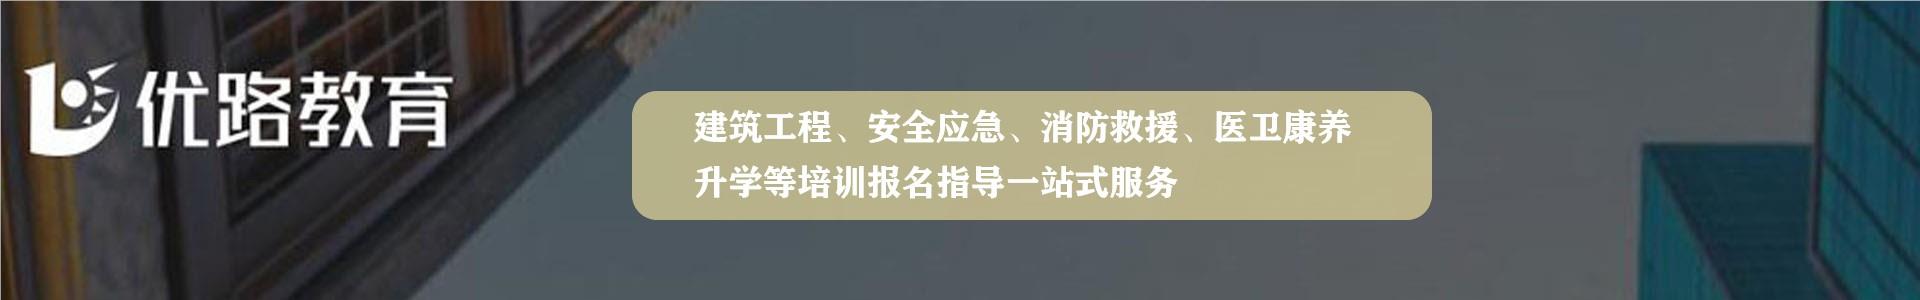 重庆优路消防监控证培训学校